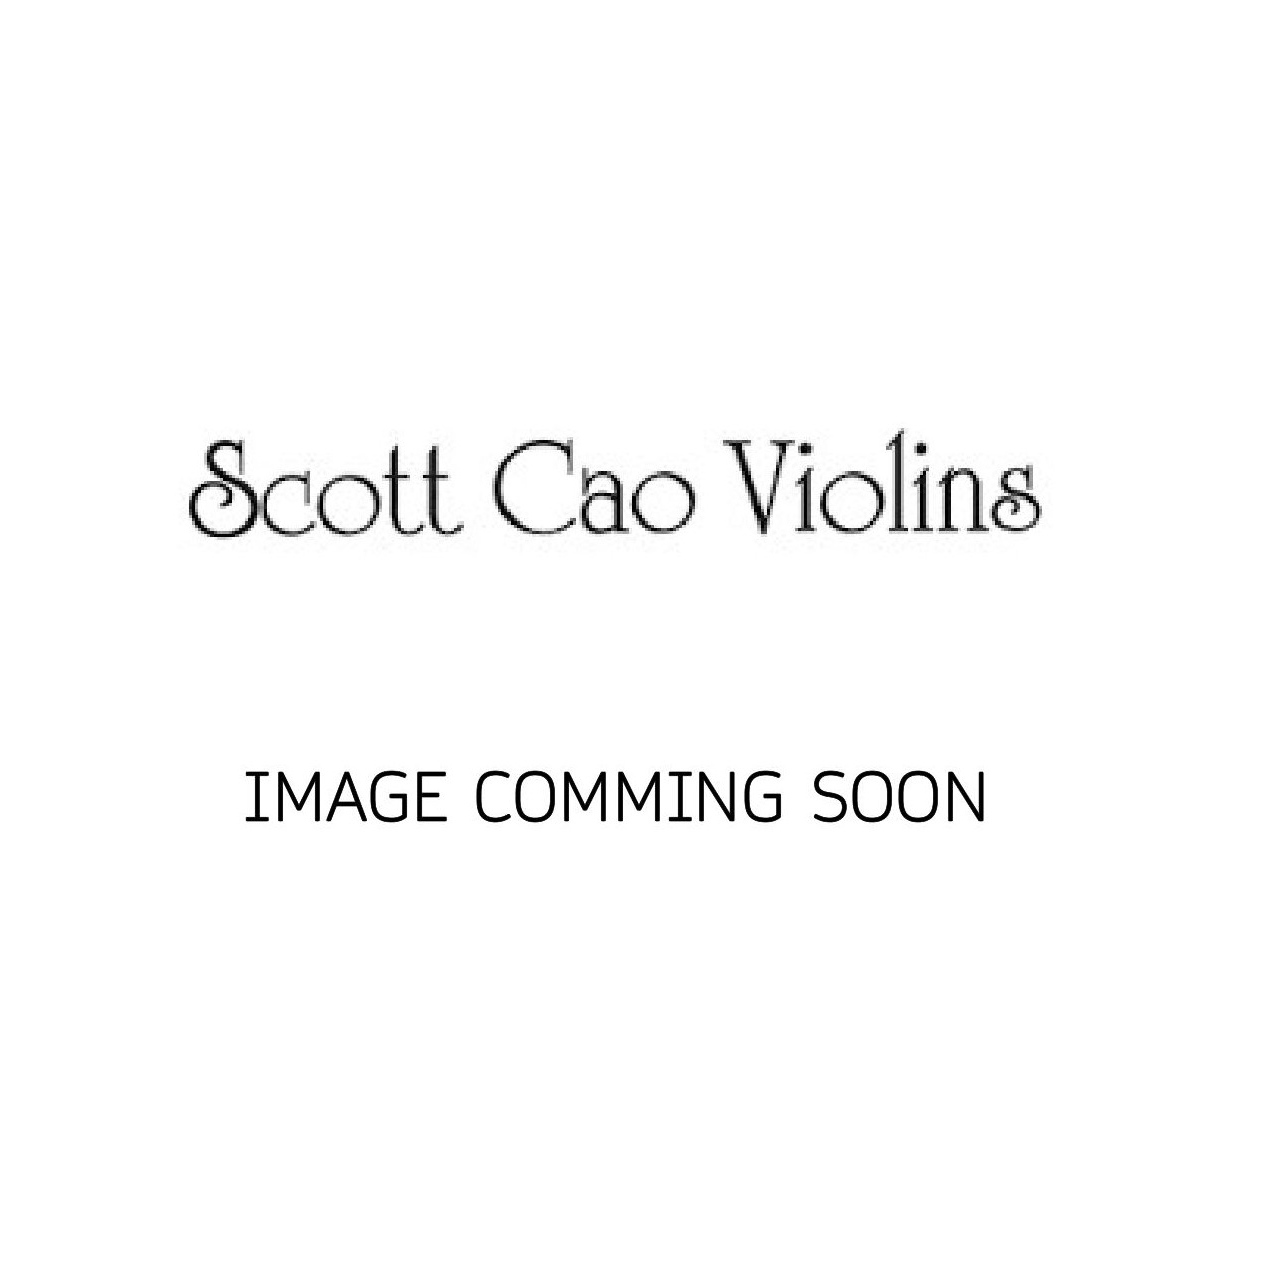 Scott Cao Cello 4/4 Rocca (750E)